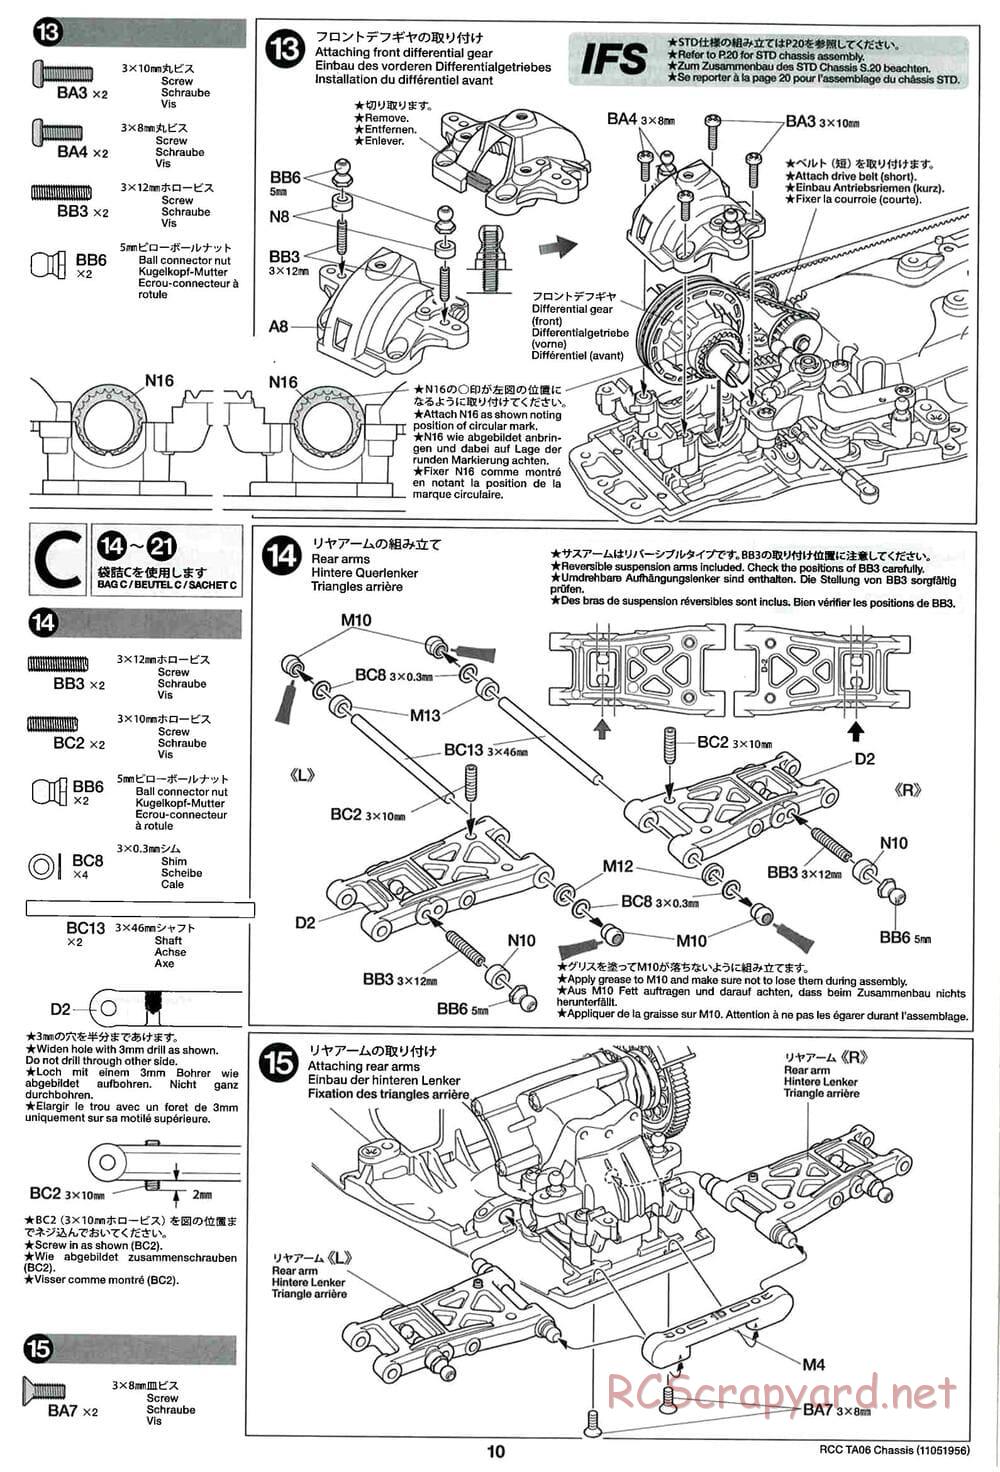 Tamiya - TA06 Chassis - Manual - Page 10